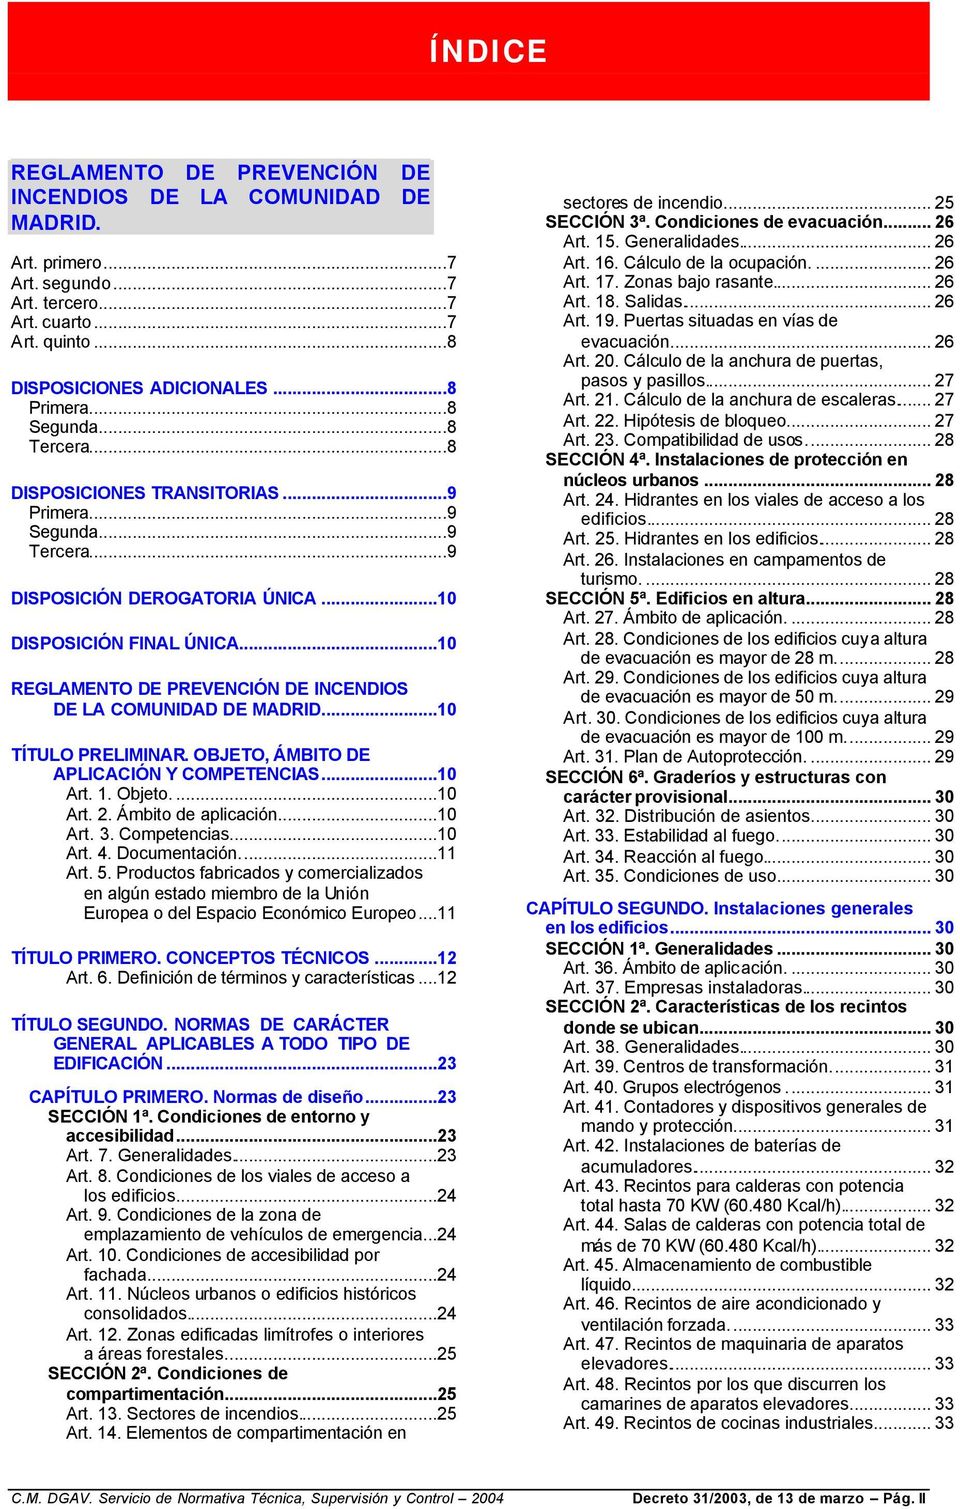 ..10 REGLAMENTO DE PREVENCIÓN DE INCENDIOS DE LA COMUNIDAD DE MADRID...10 TÍTULO PRELIMINAR. OBJETO, ÁMBITO DE APLICACIÓN Y COMPETENCIAS...10 Art. 1. Objeto....10 Art. 2. Ámbito de aplicación...10 Art. 3.